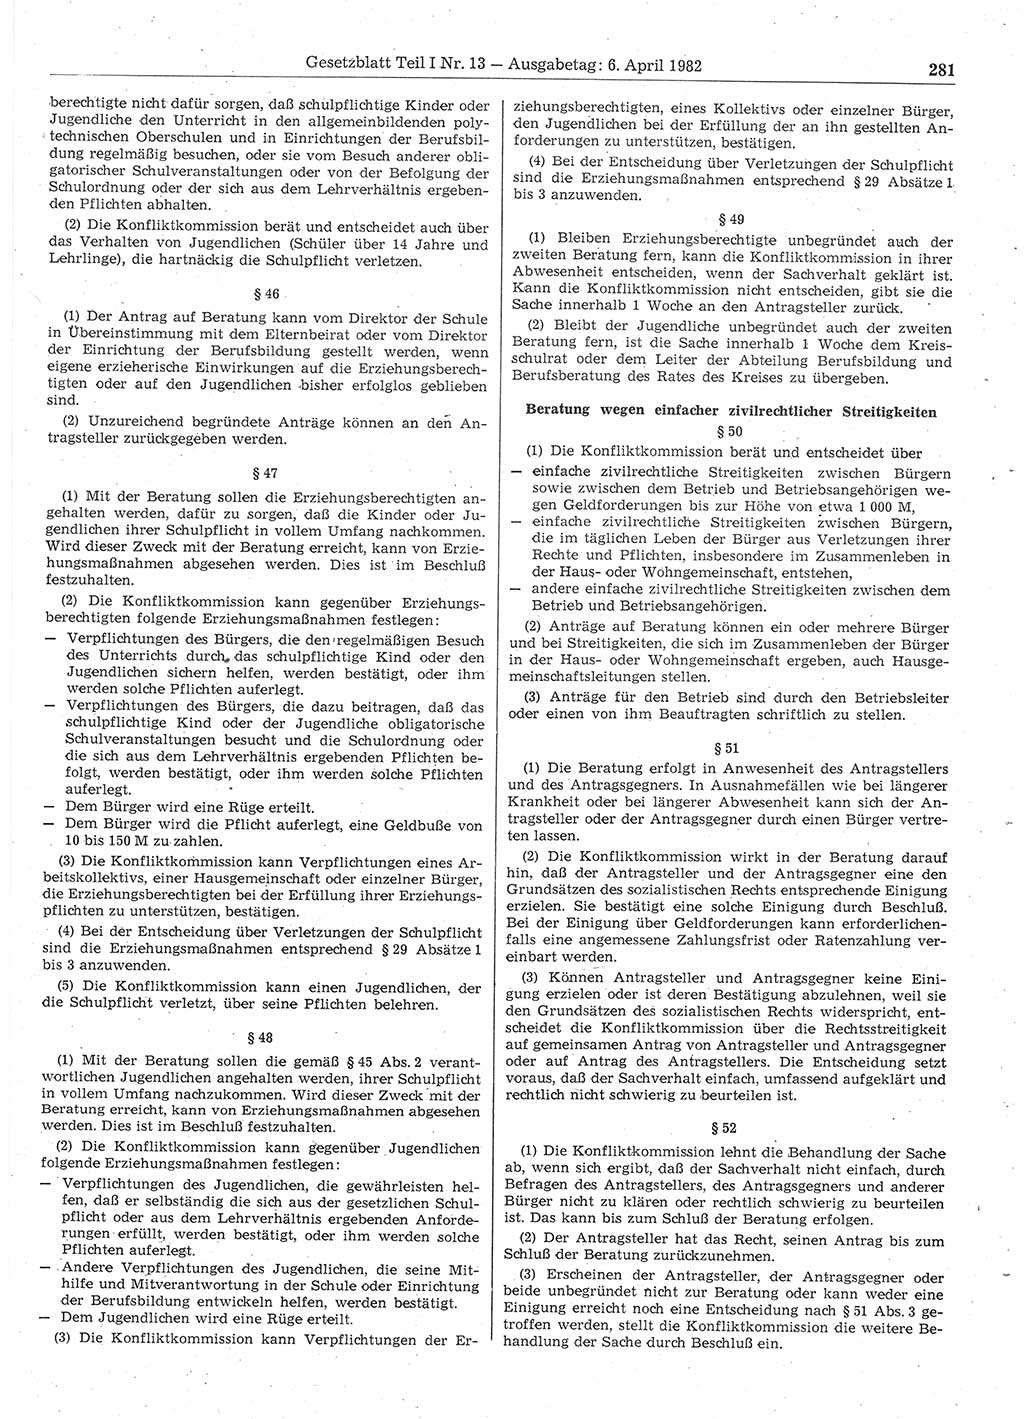 Gesetzblatt (GBl.) der Deutschen Demokratischen Republik (DDR) Teil Ⅰ 1982, Seite 281 (GBl. DDR Ⅰ 1982, S. 281)